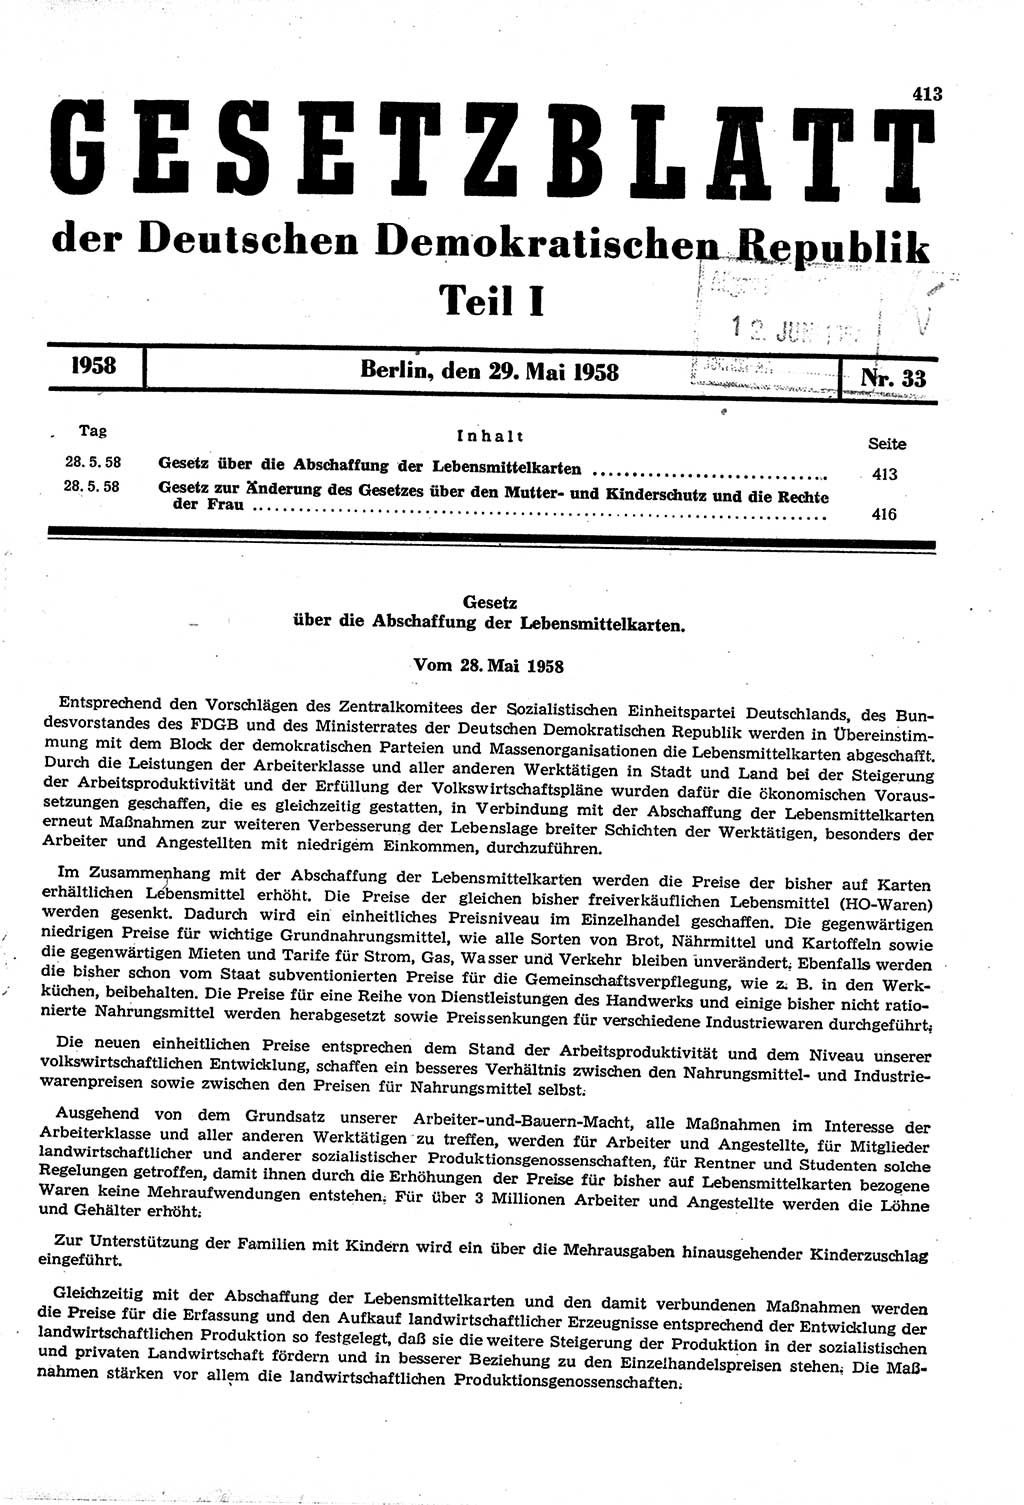 Gesetzblatt (GBl.) der Deutschen Demokratischen Republik (DDR) Teil Ⅰ 1958, Seite 413 (GBl. DDR Ⅰ 1958, S. 413)